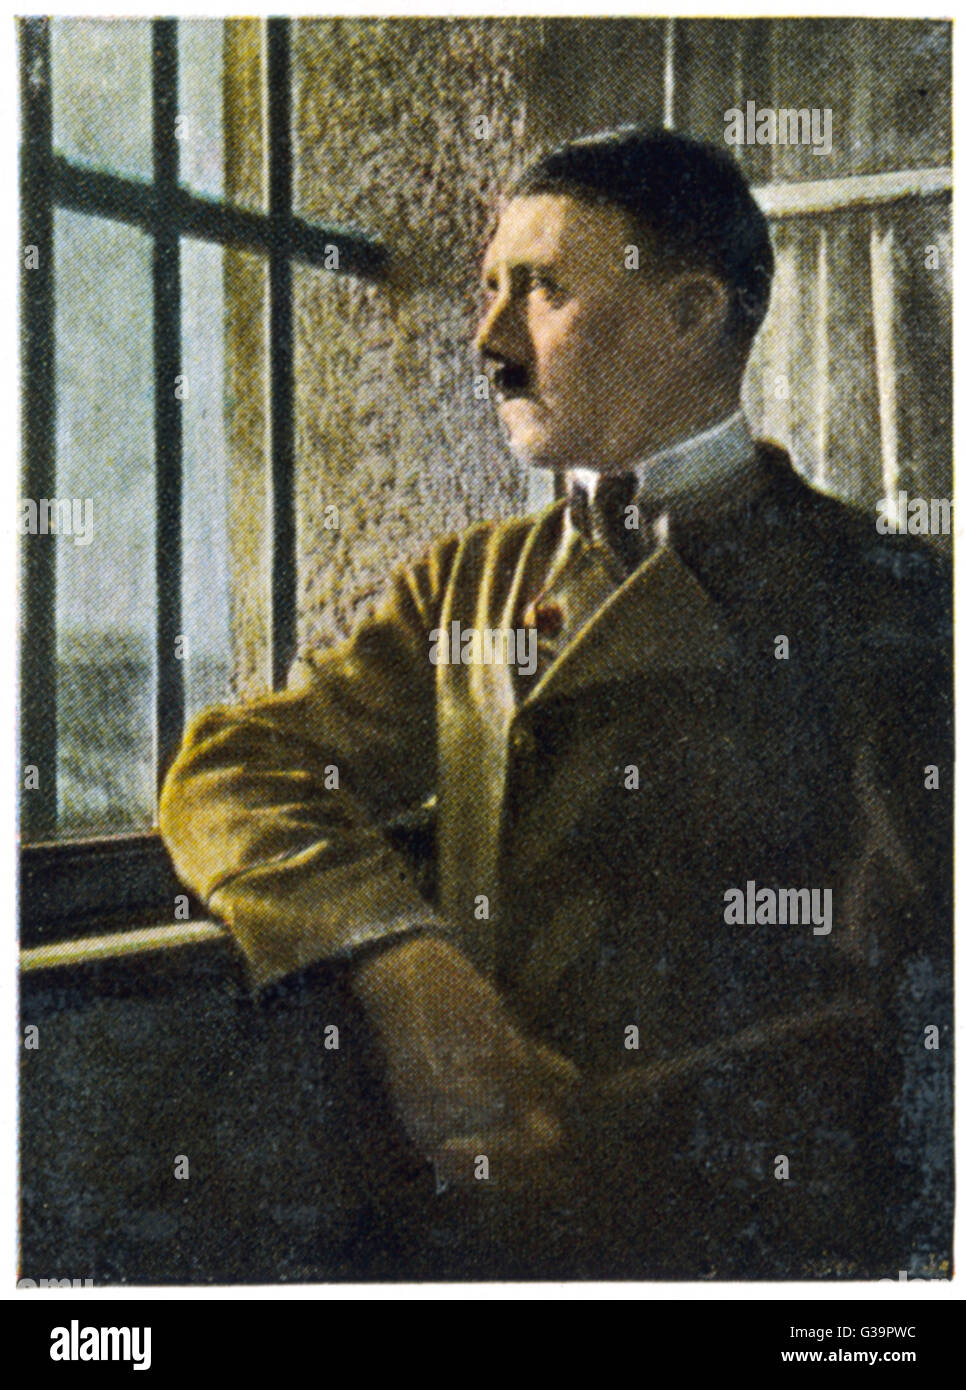 Hitler in Festung Landsberg prigione dopo il fallimento del putsch di Monaco di Baviera. Data: 1923 Foto Stock